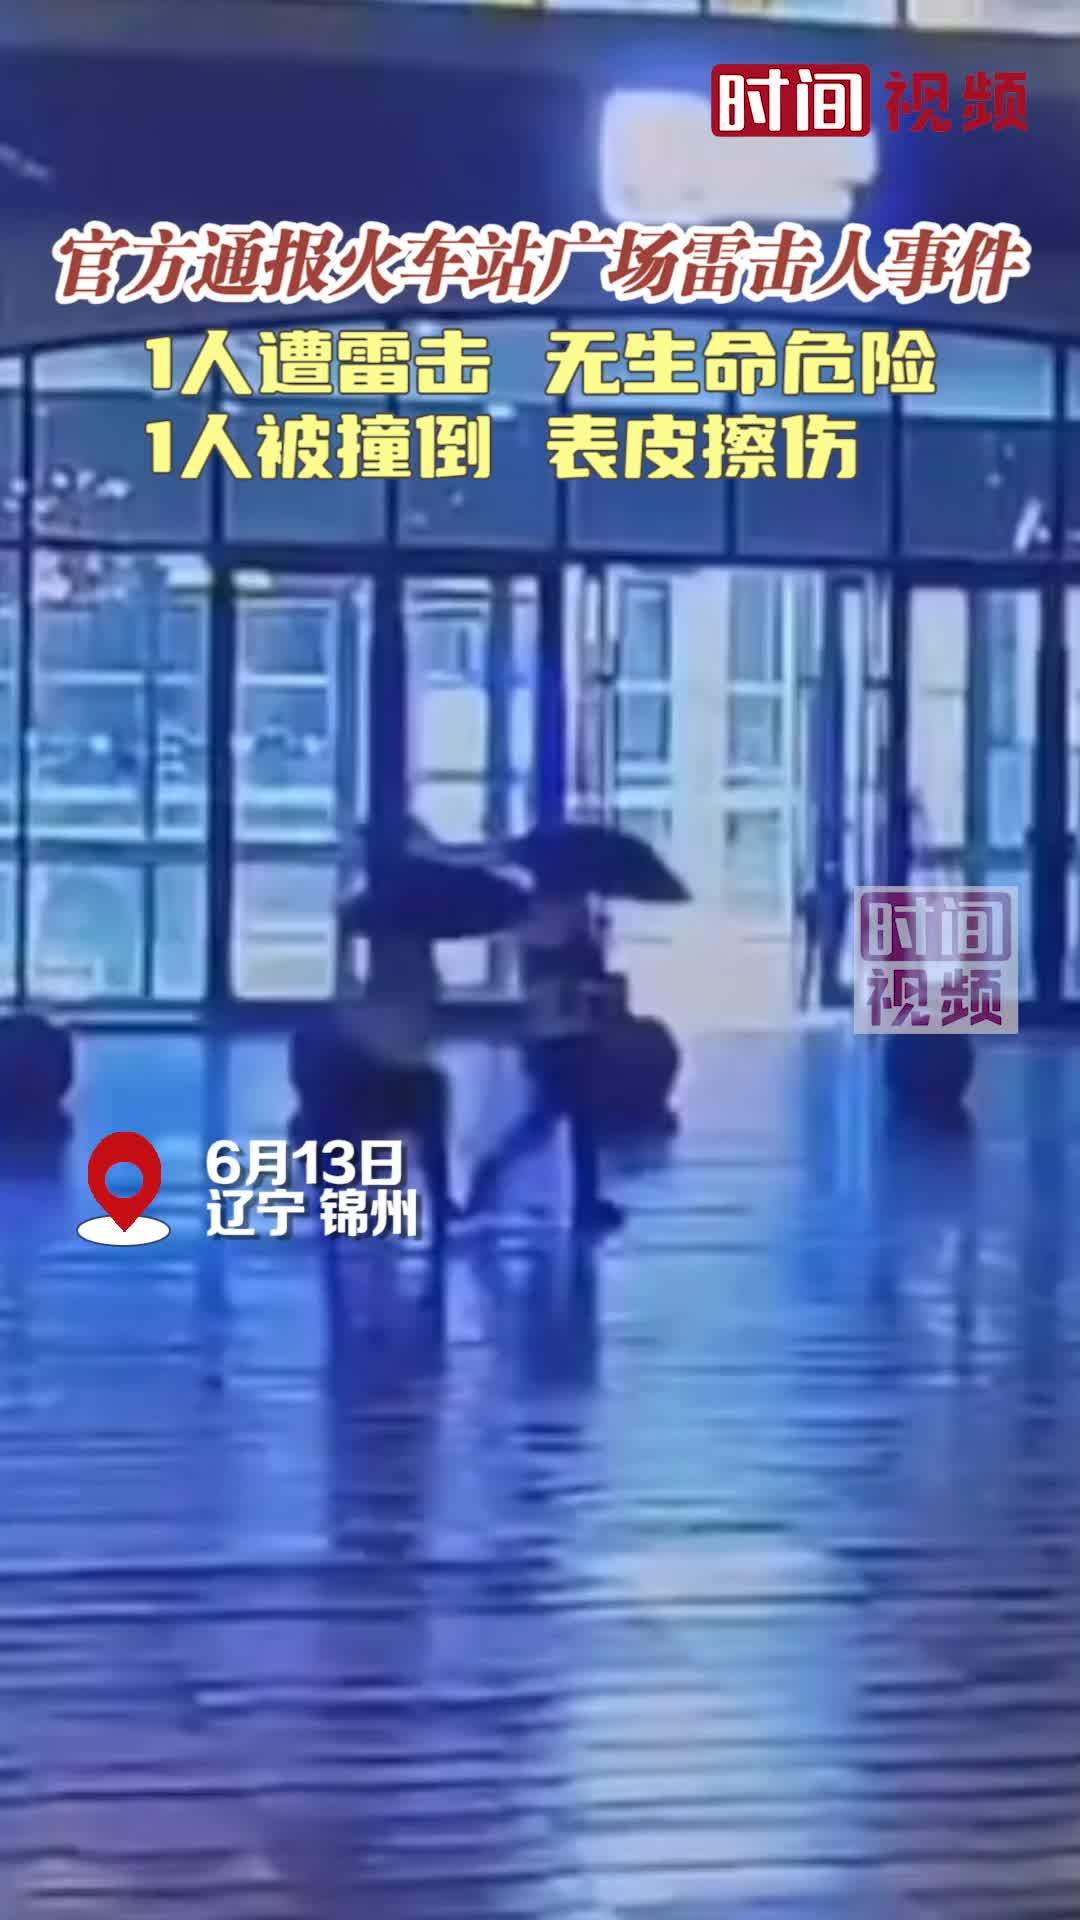 应急局通报锦州北站雷击人事件1人遭雷击无生命危险1人擦伤